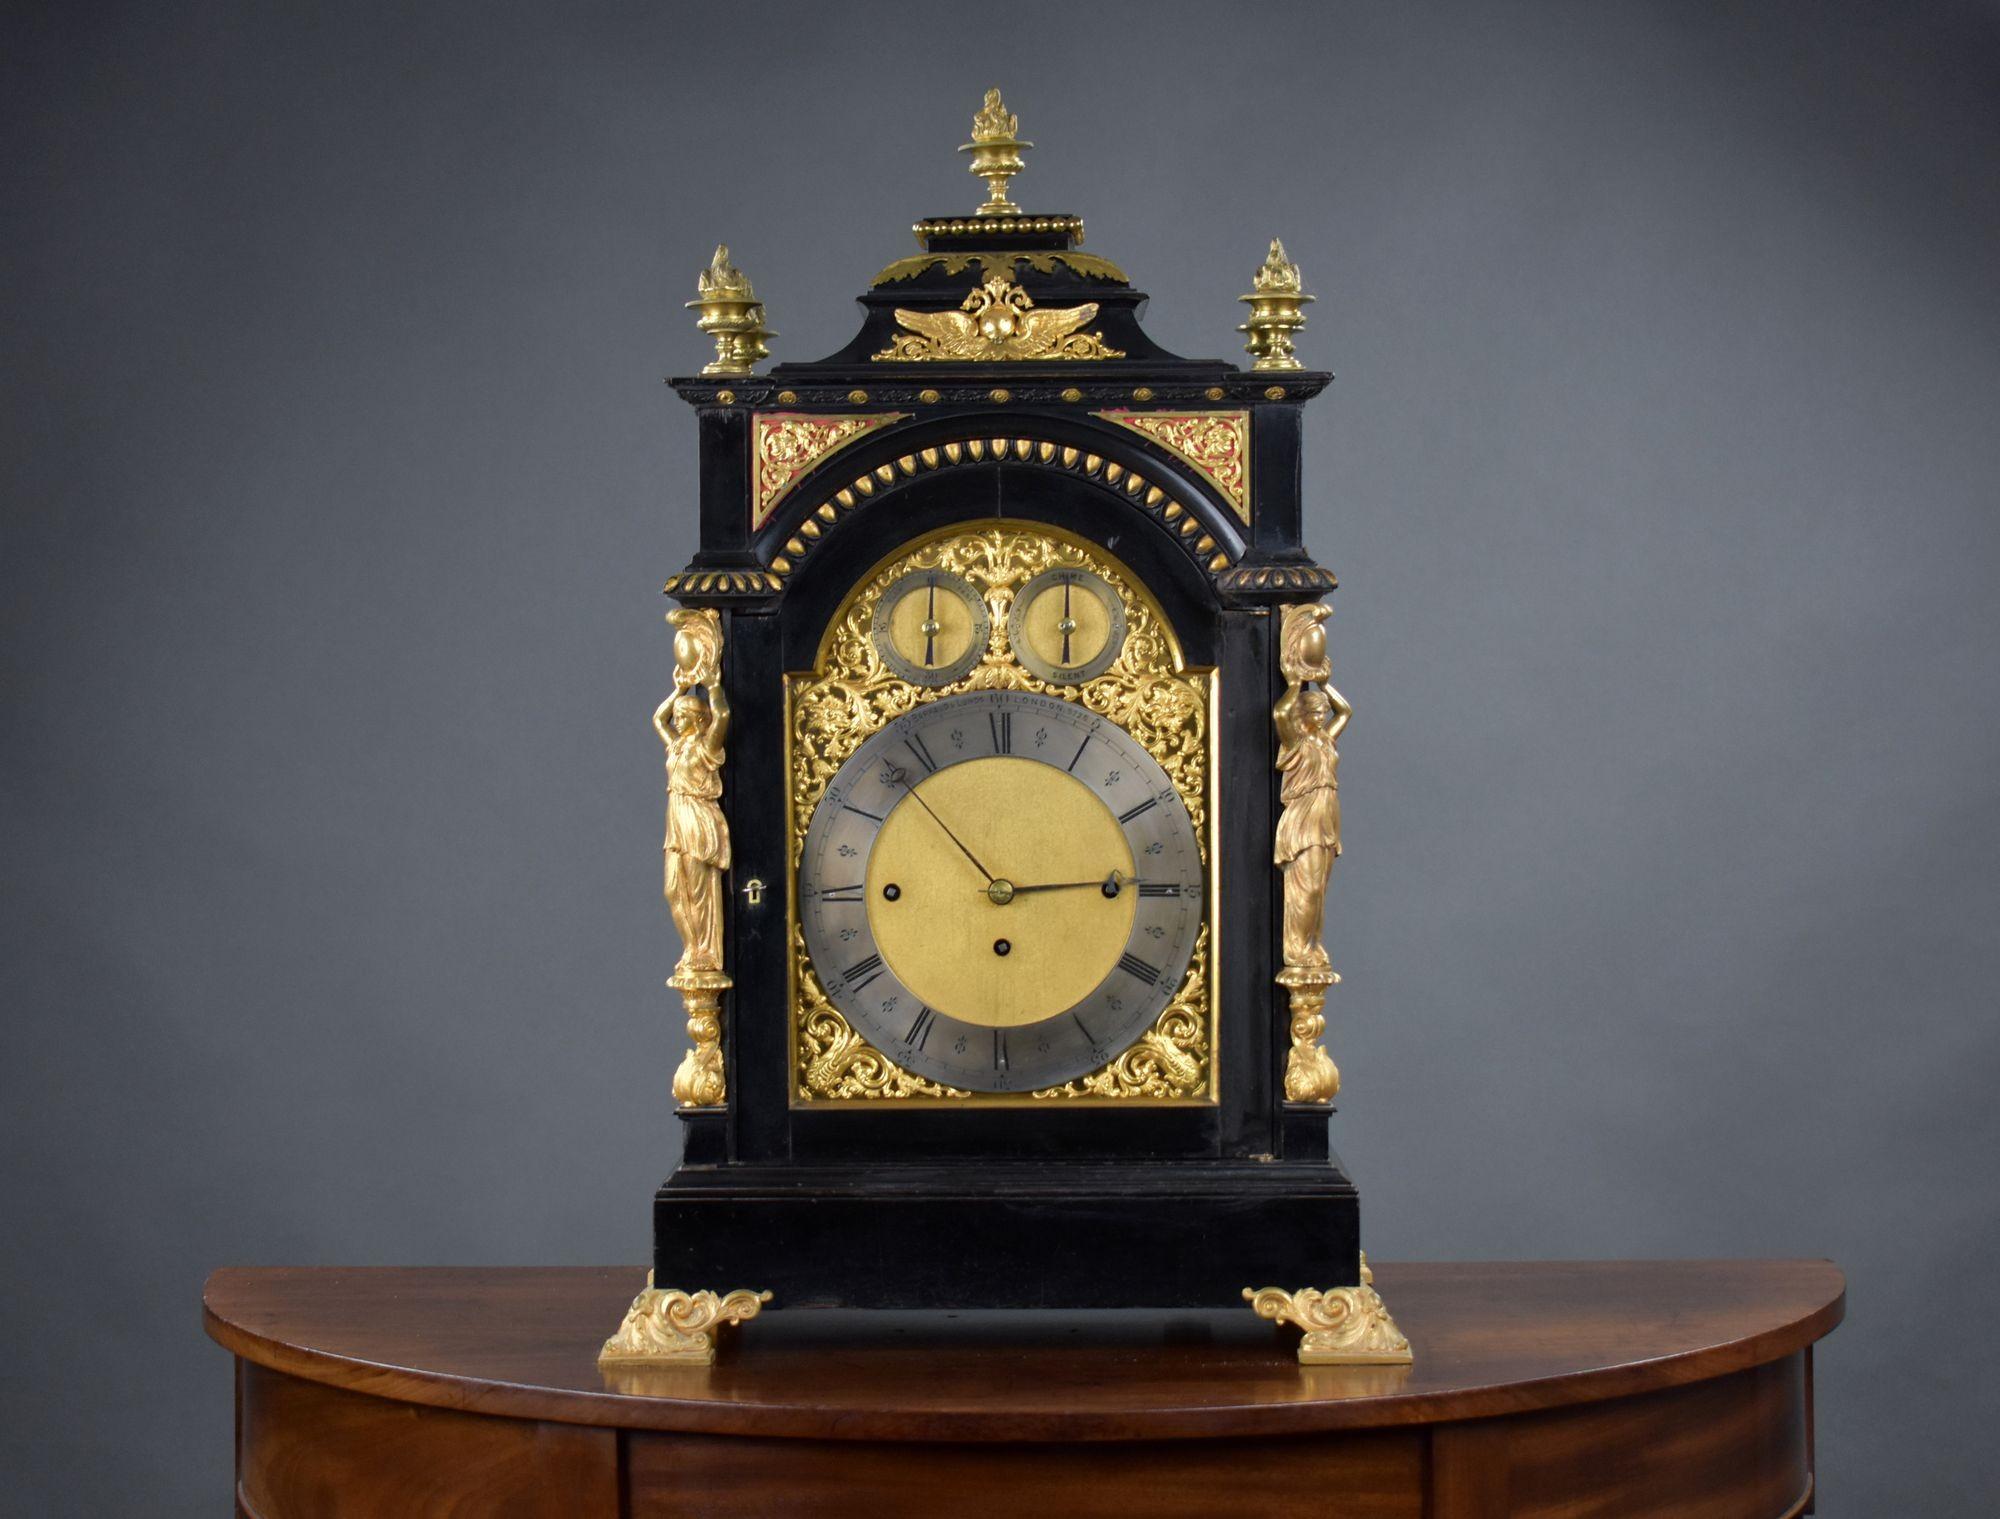 Il s'agit d'une horloge victorienne à support ébonisé de grande qualité, fabriquée par Barraud & Lunds, à Londres. La pendule est ornée de finitions et de montures en bronze doré d'origine, d'écoinçons dorés, d'un cadran argenté gravé avec chiffres